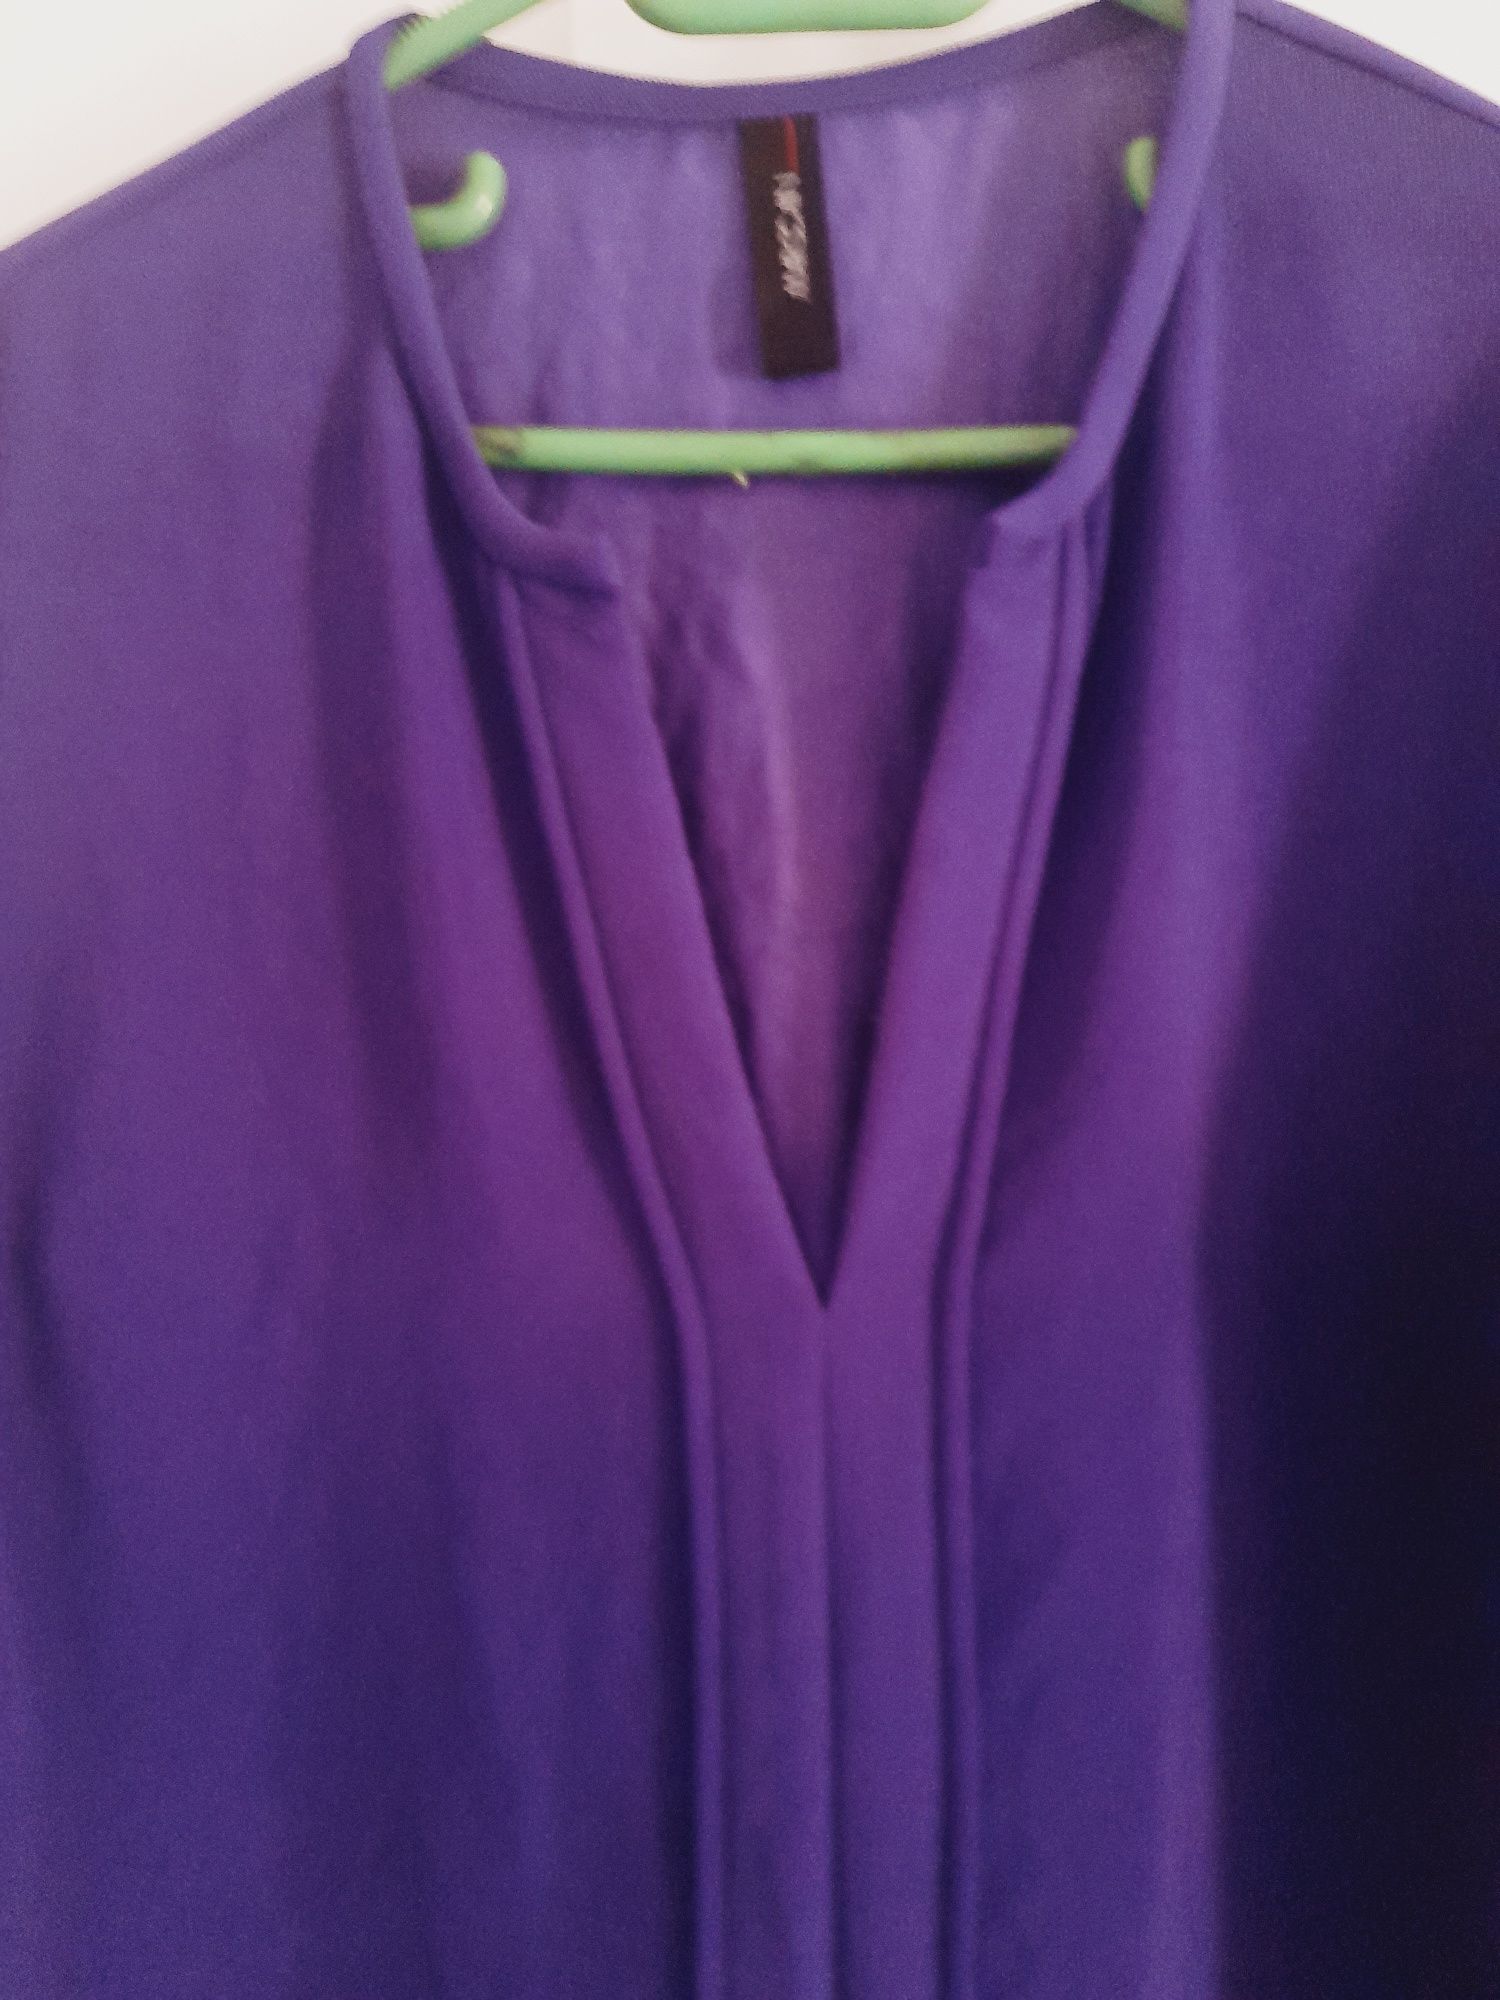 Bluza din voal violet